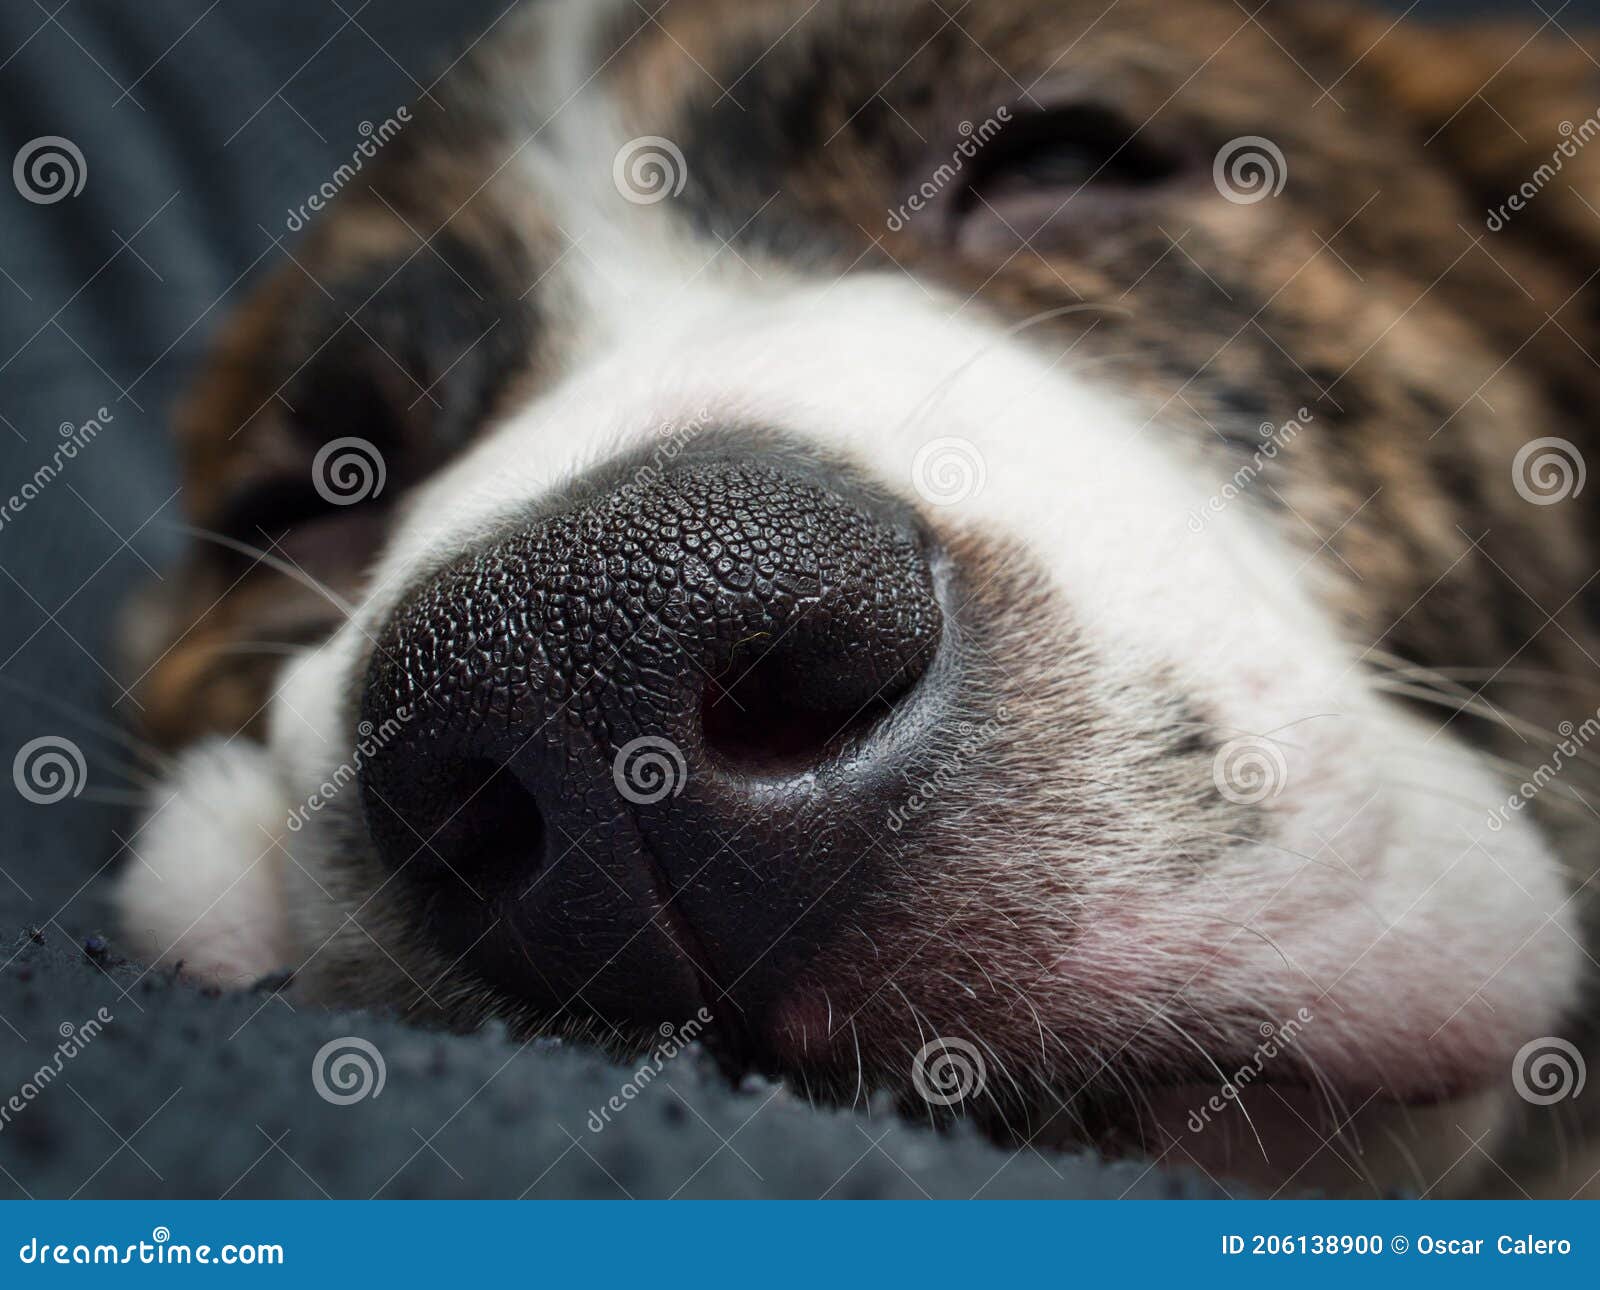 狗 鼻子 动物 - Pixabay上的免费照片 - Pixabay